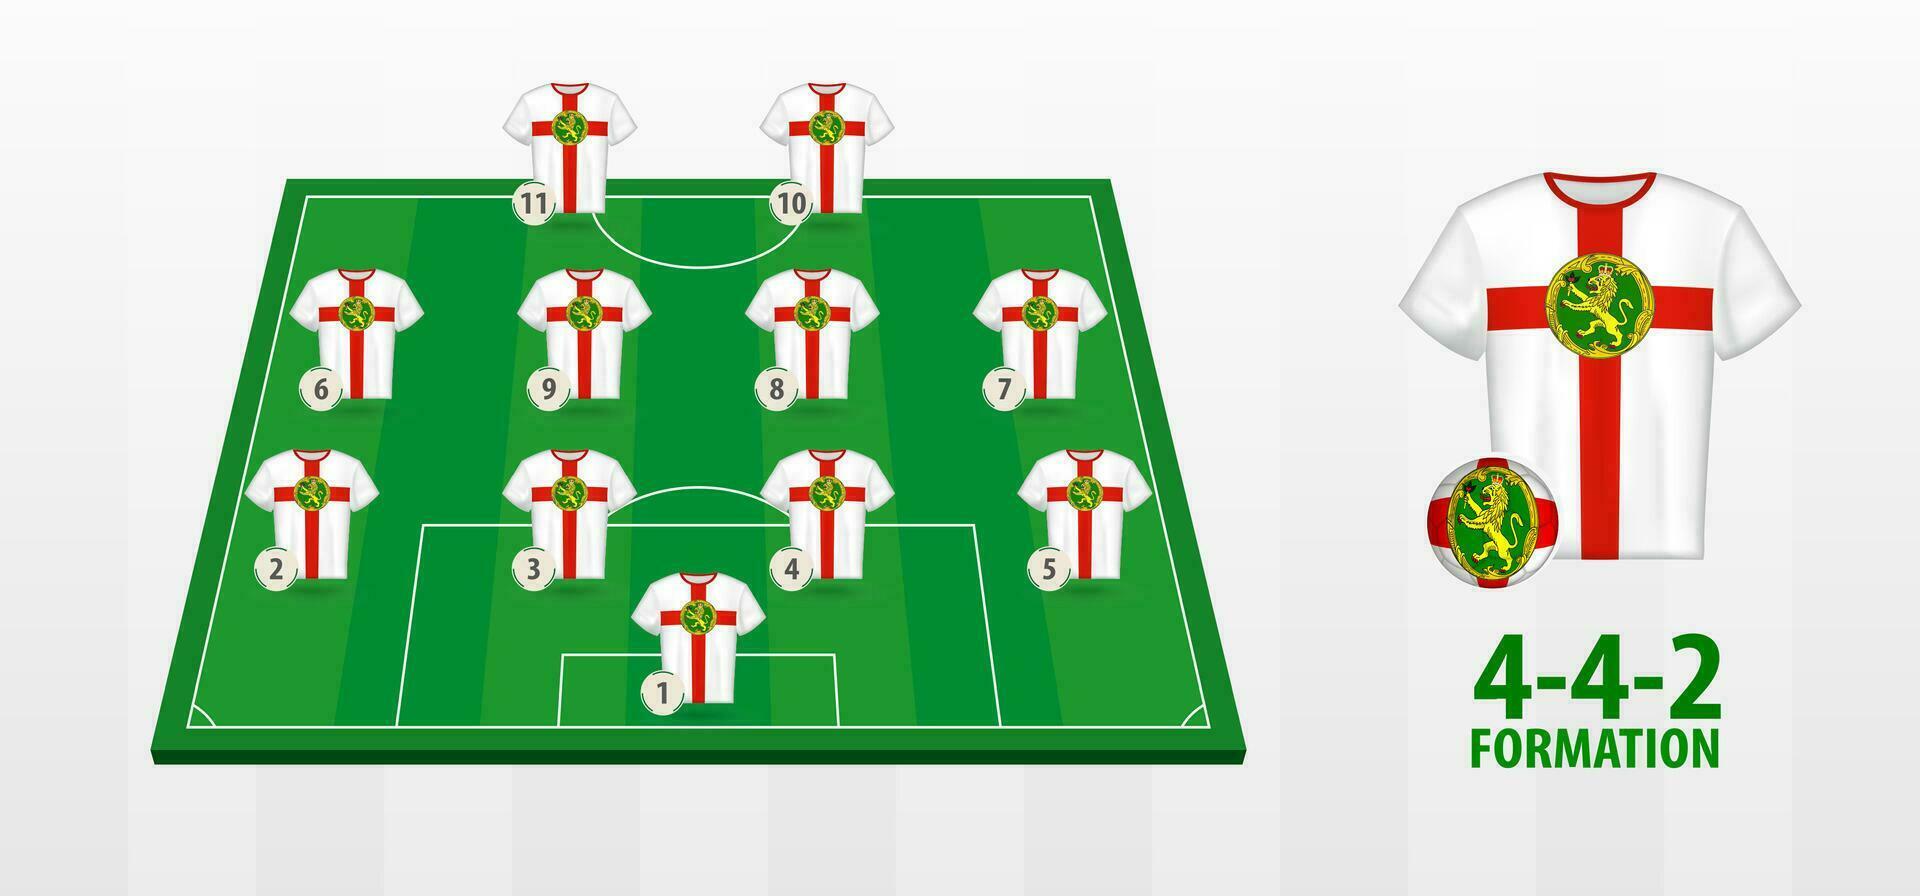 Alderney National Football Team Formation on Football Field. vector